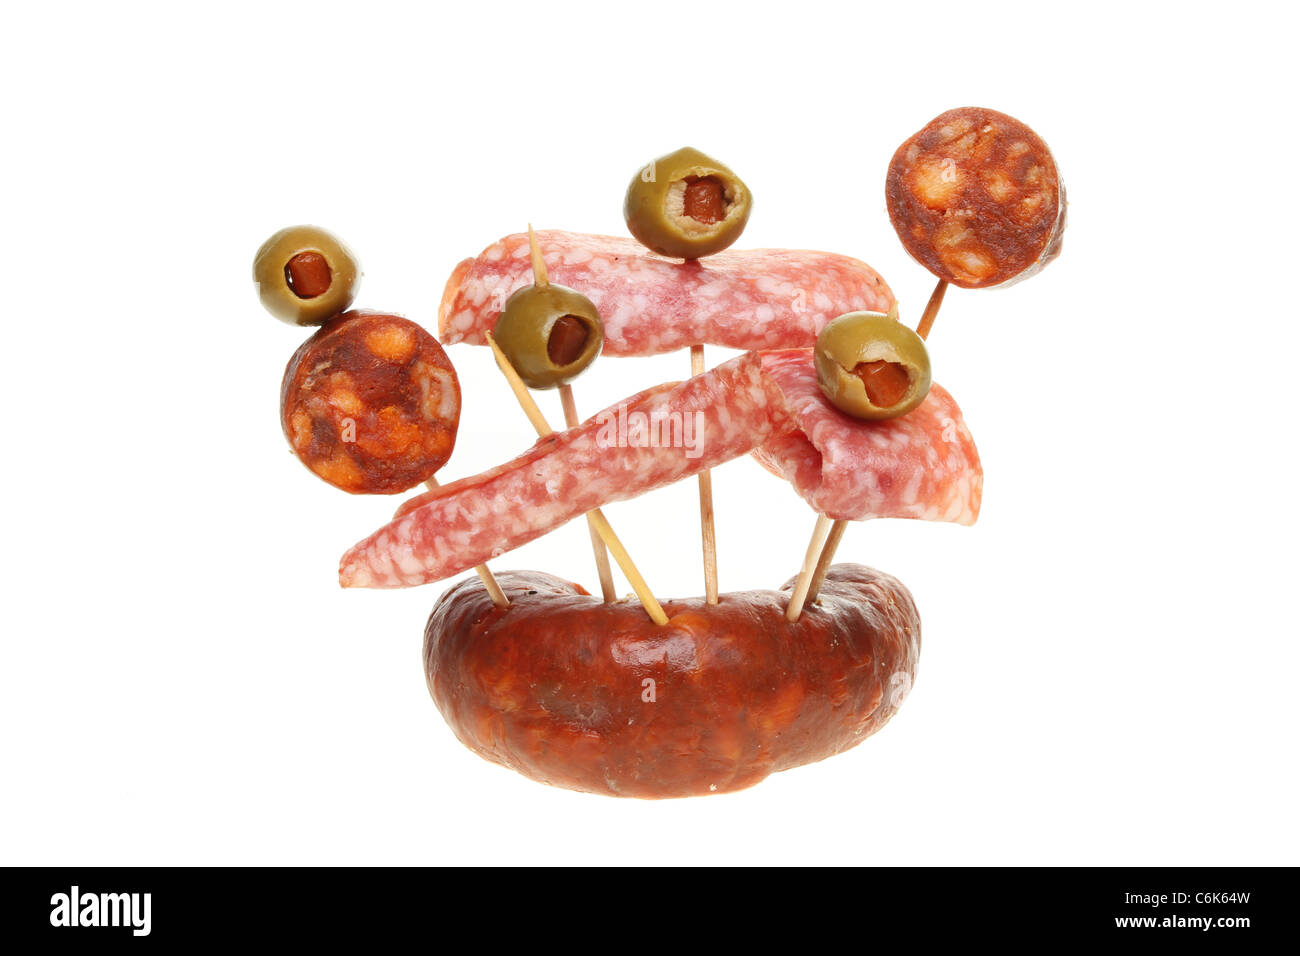 Auswahl an Salami und Chorizo Wurst Fleisch mit Oliven auf cocktail-sticks Stockfoto